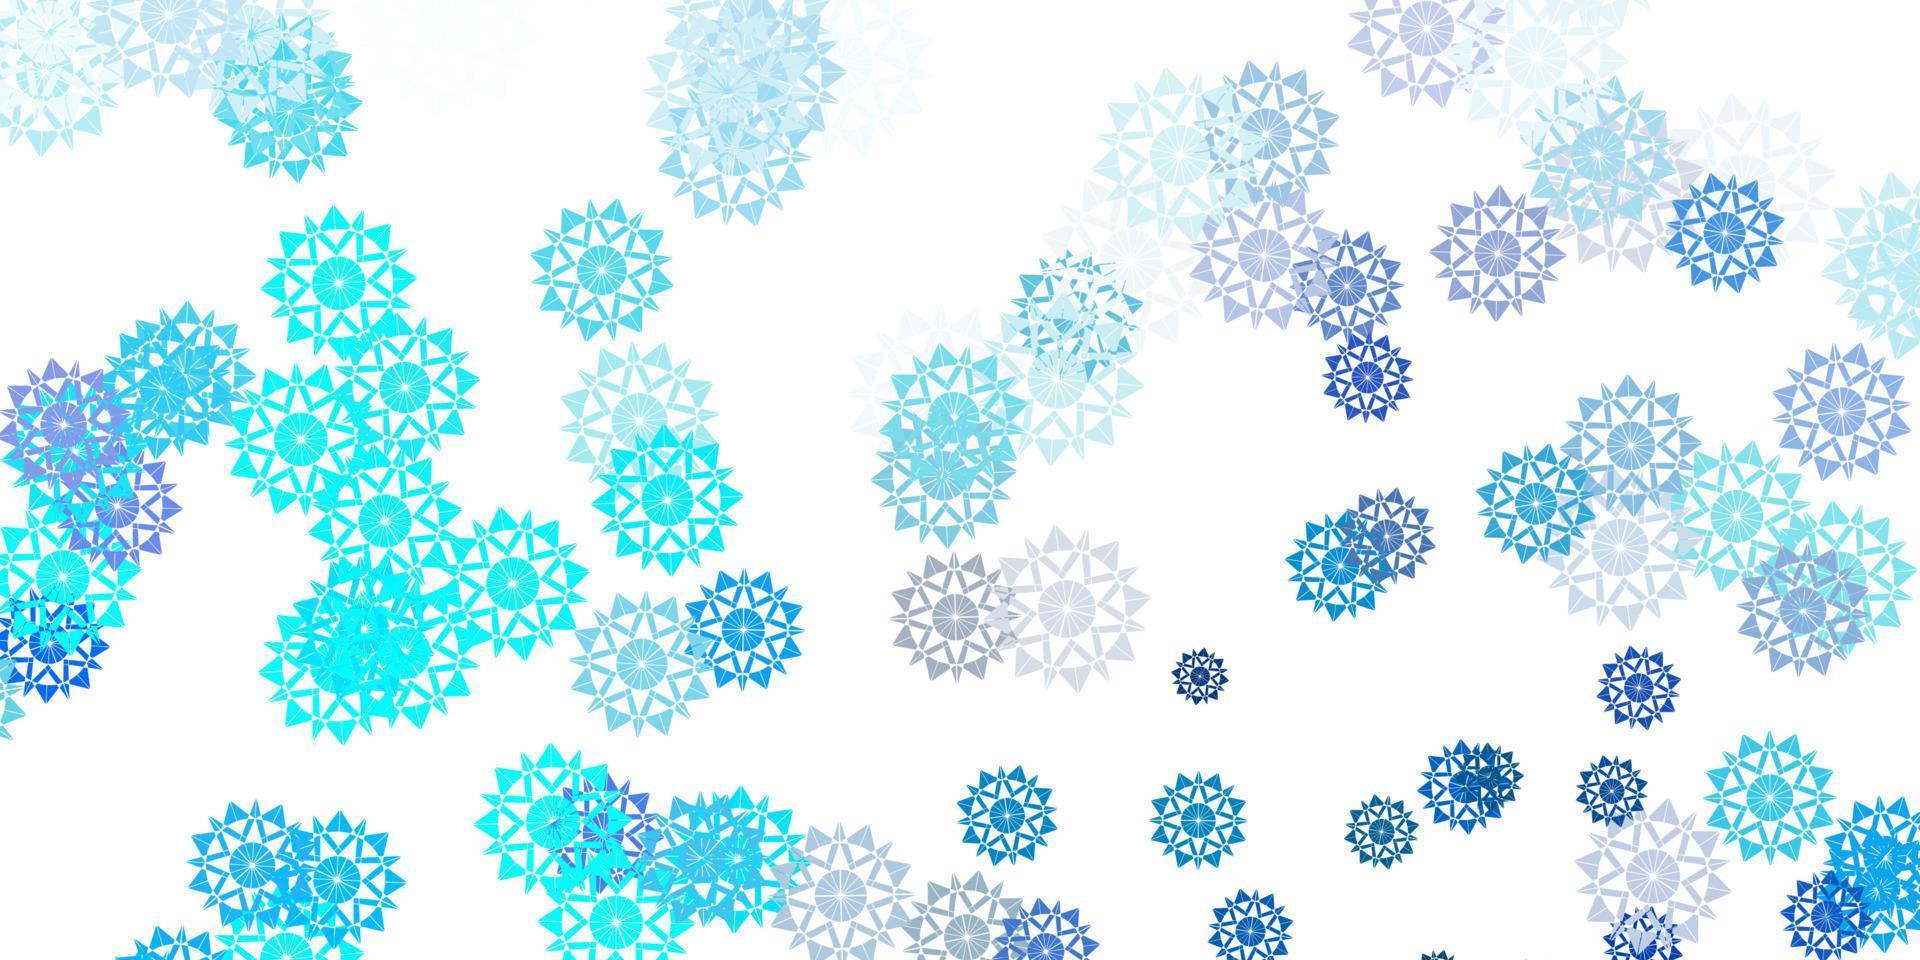 bellissimo sfondo di fiocchi di neve blu chiaro vettoriale con fiori.